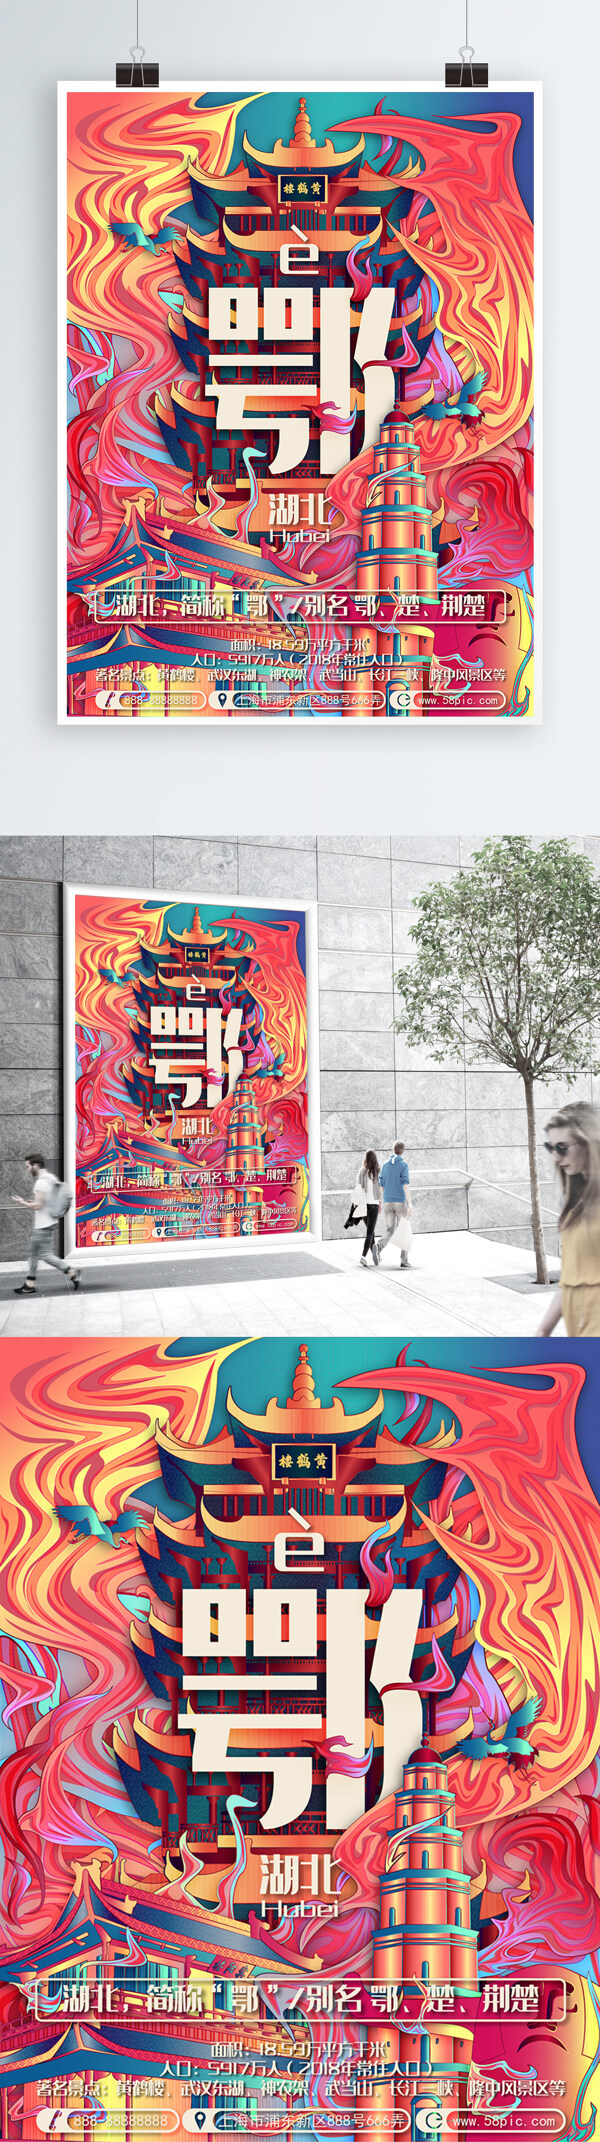 原创创意手绘插画城市说趋势湖北省旅游海报